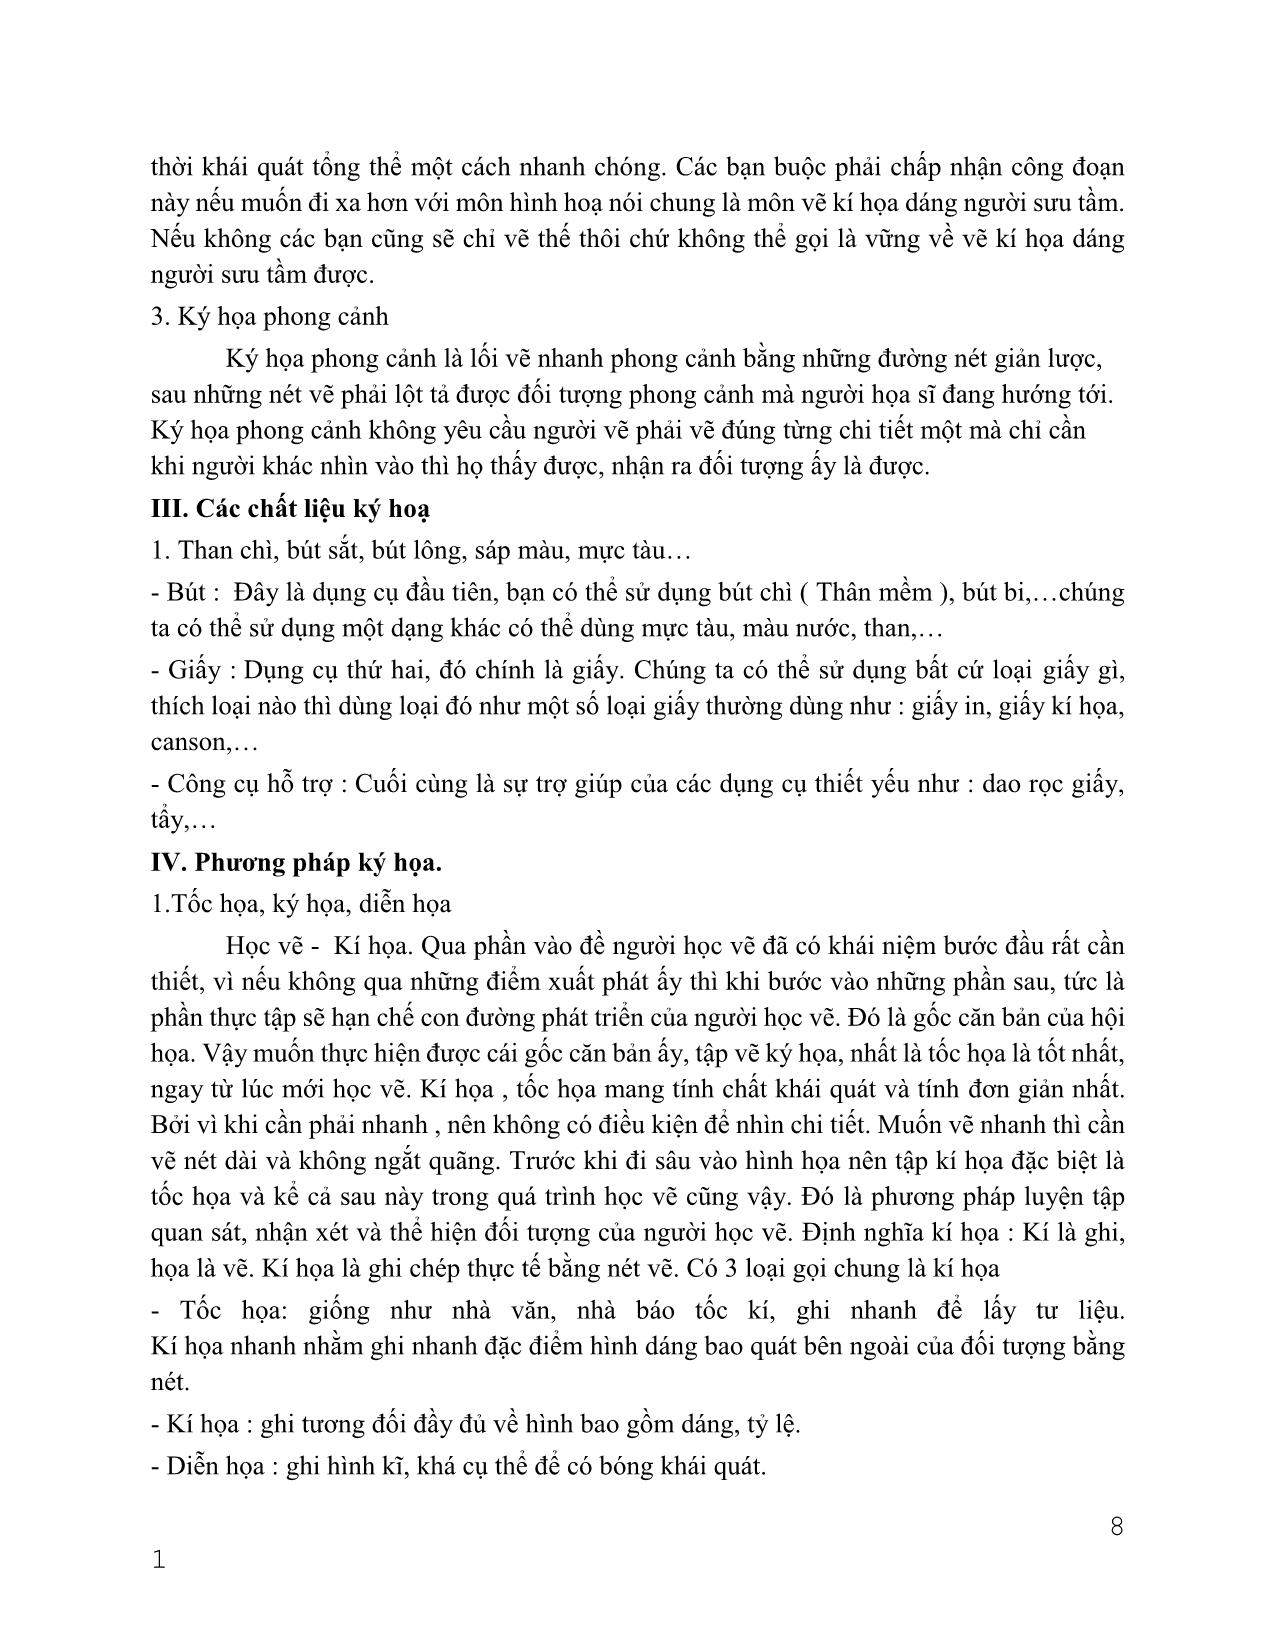 Giáo trình Hội họa - Trang trí cơ bản trang 8